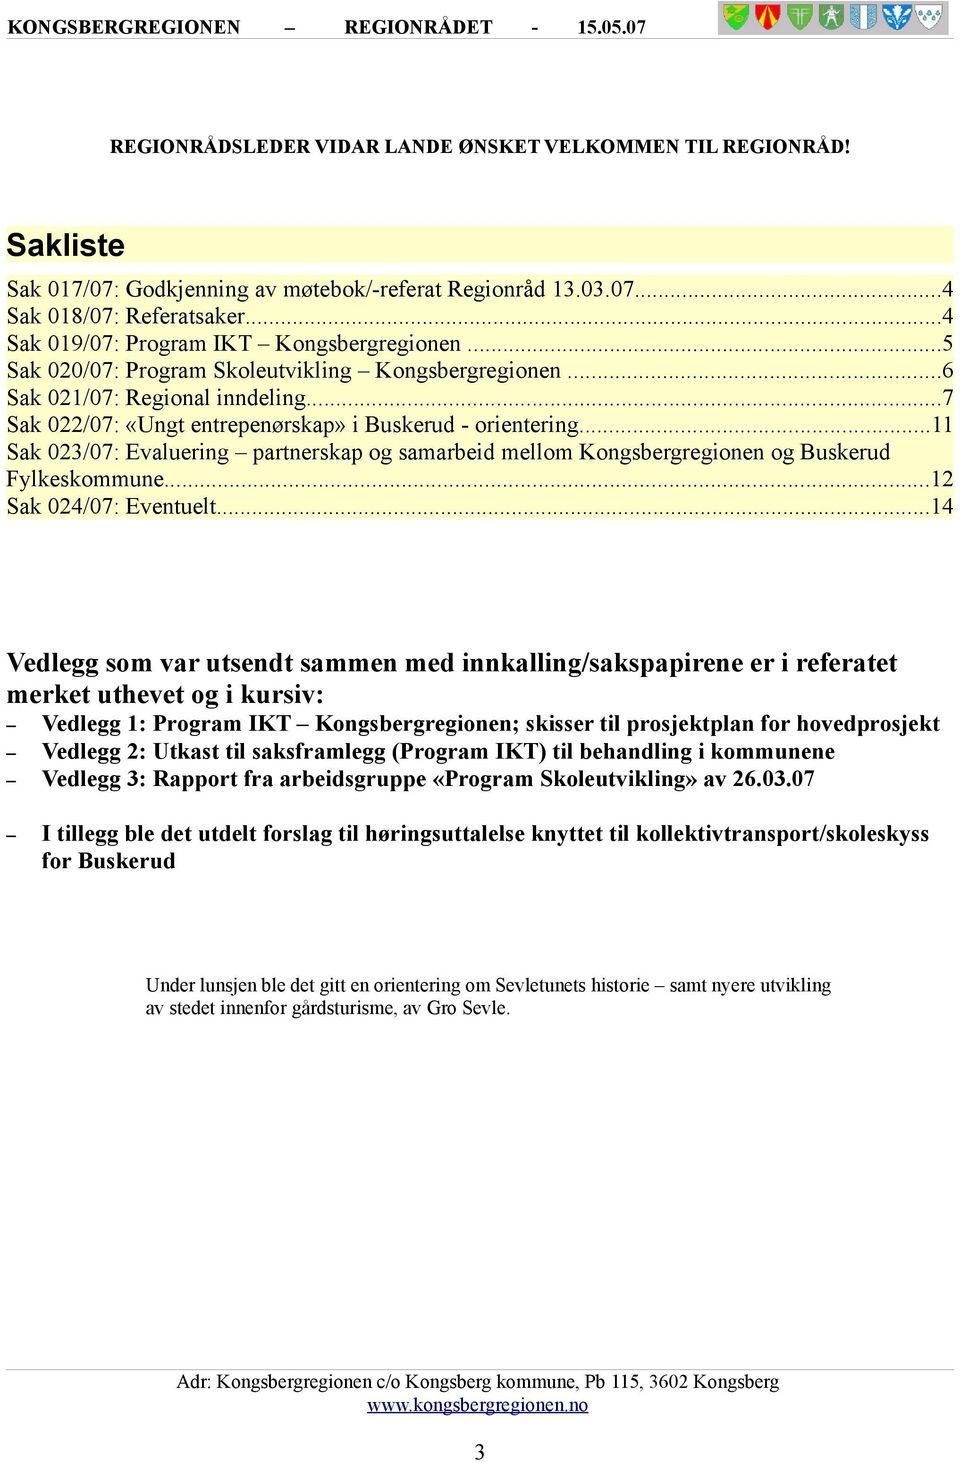 ..11 Sak 023/07: Evaluering partnerskap og samarbeid mellom Kongsbergregionen og Buskerud Fylkeskommune...12 Sak 024/07: Eventuelt.